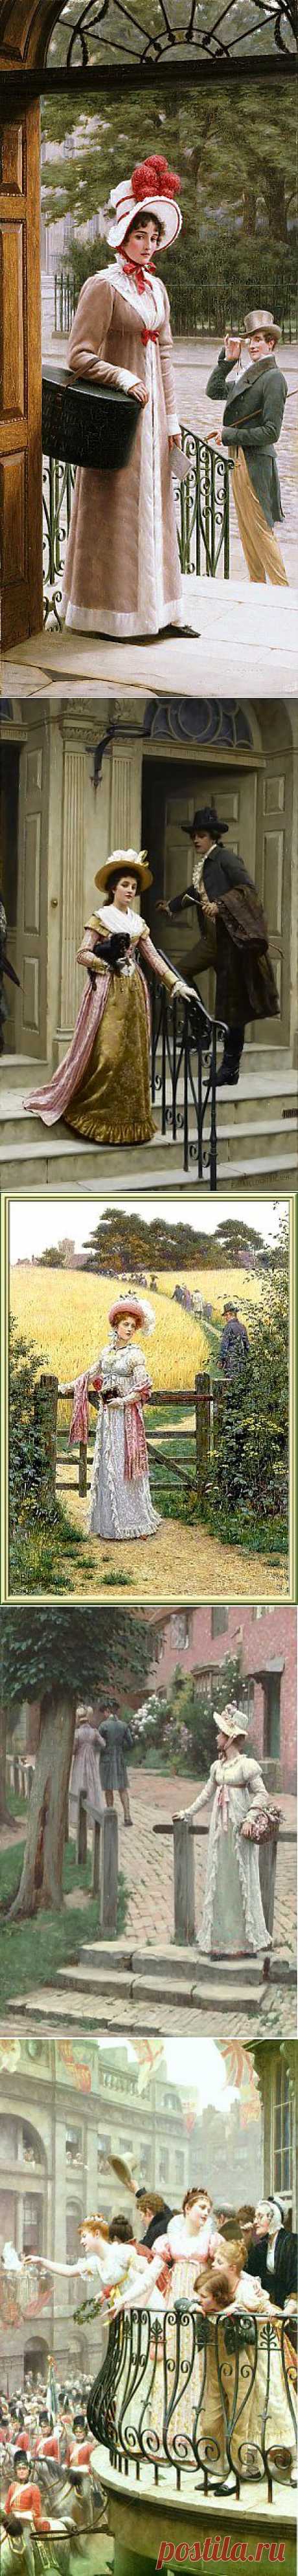 Эдмунд БЛЭЙР-ЛЭЙТОН (1853 - 1922) - Британский художник-прерафаэлит..